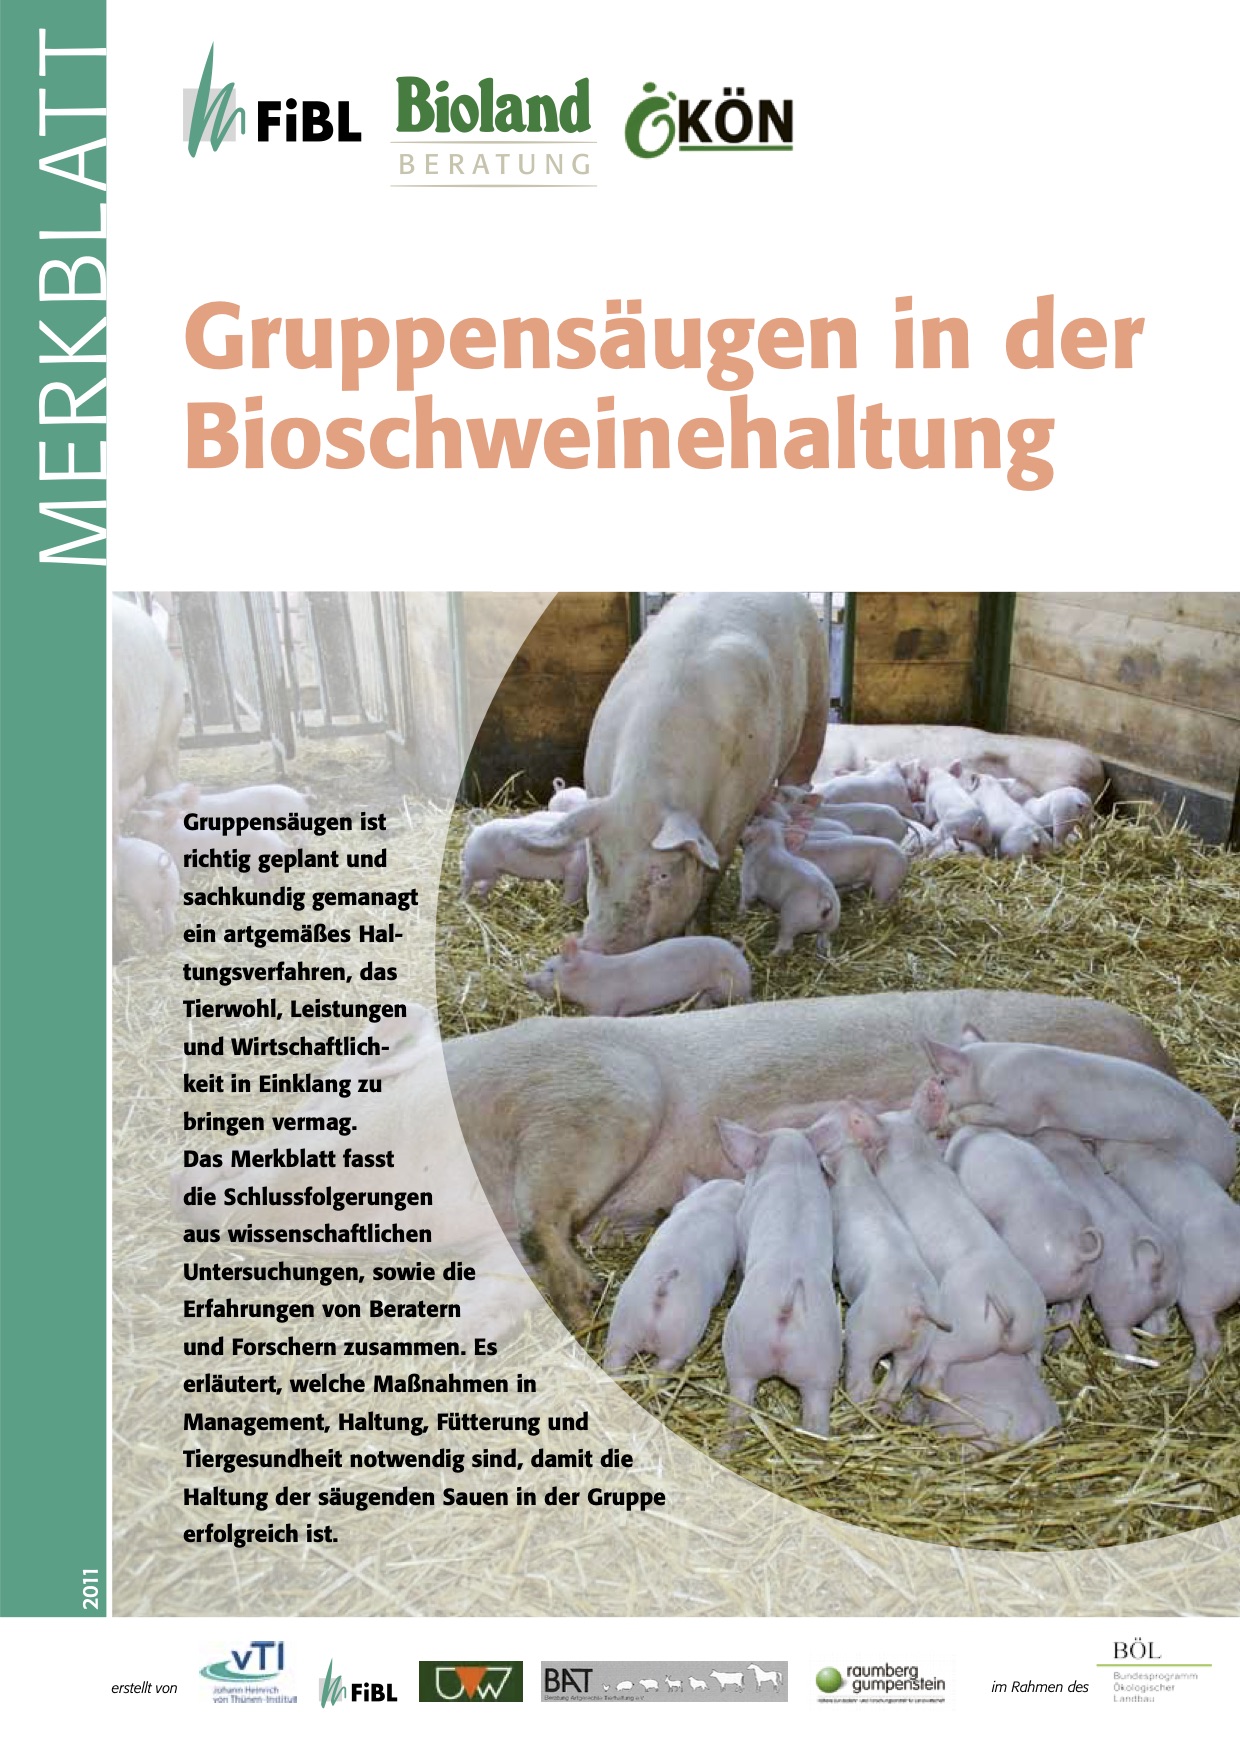 Lactancia en grupo en la cría de cerdos ecológicos (FiBL Factsheet)